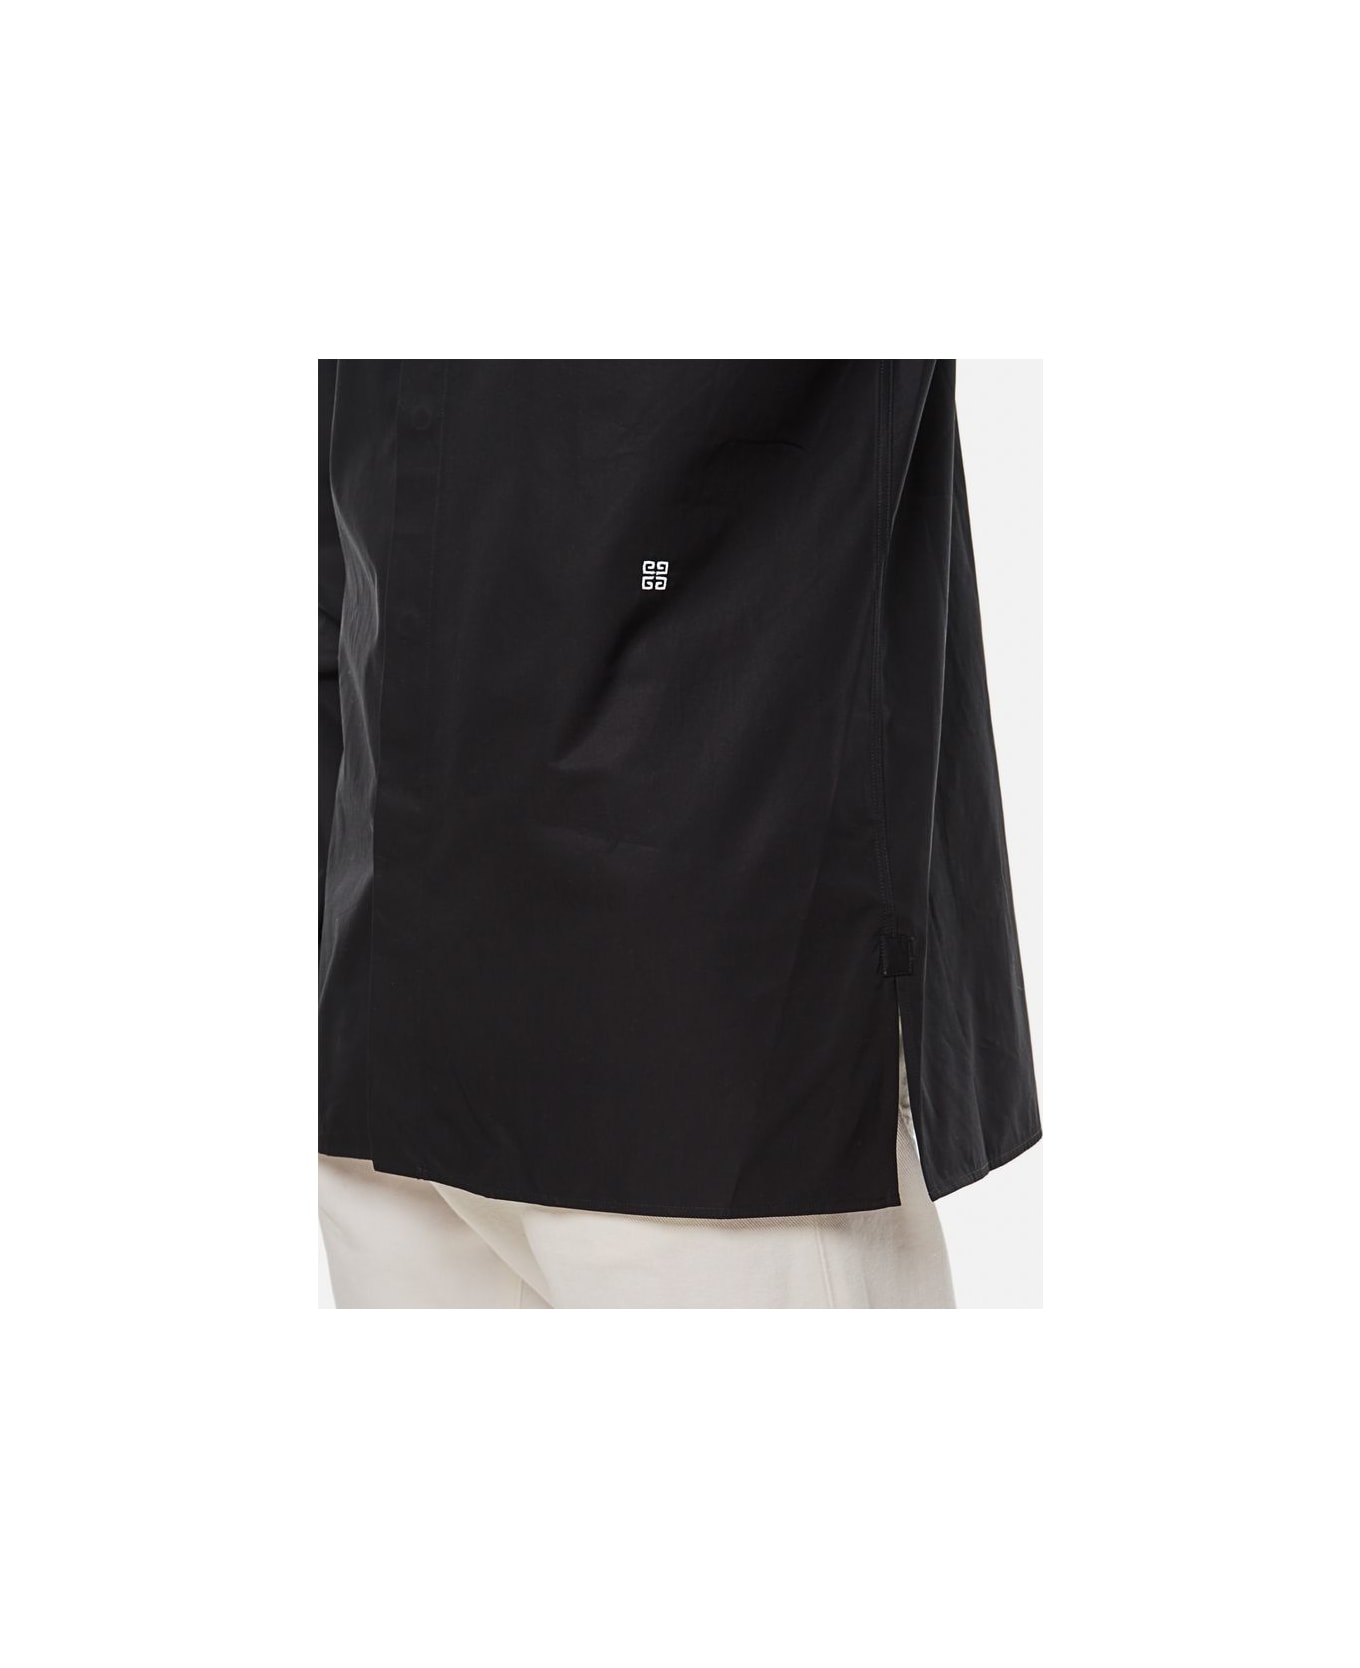 Givenchy Cotton Shirt - Black シャツ